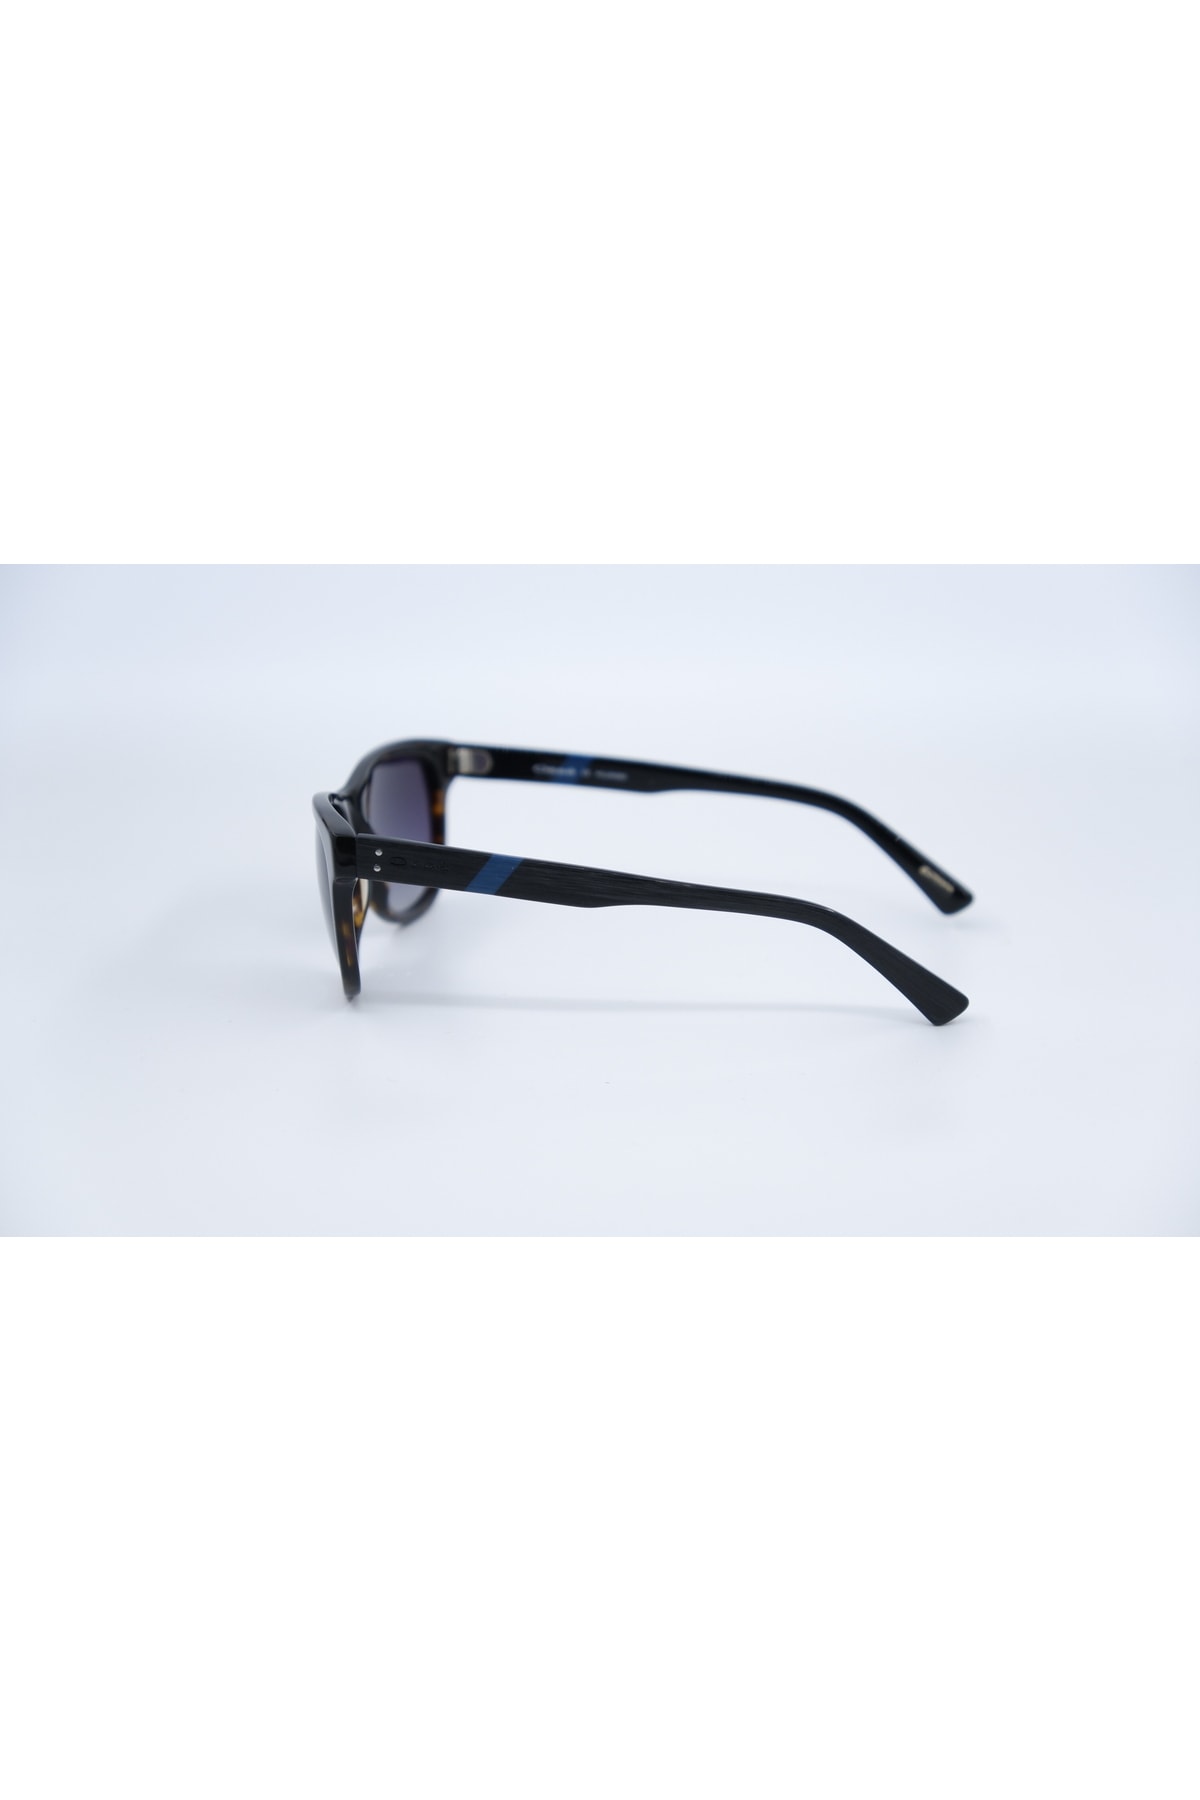 Osse عینک آفتابی شیشه ای پولاریزه یونیسکس OS2022